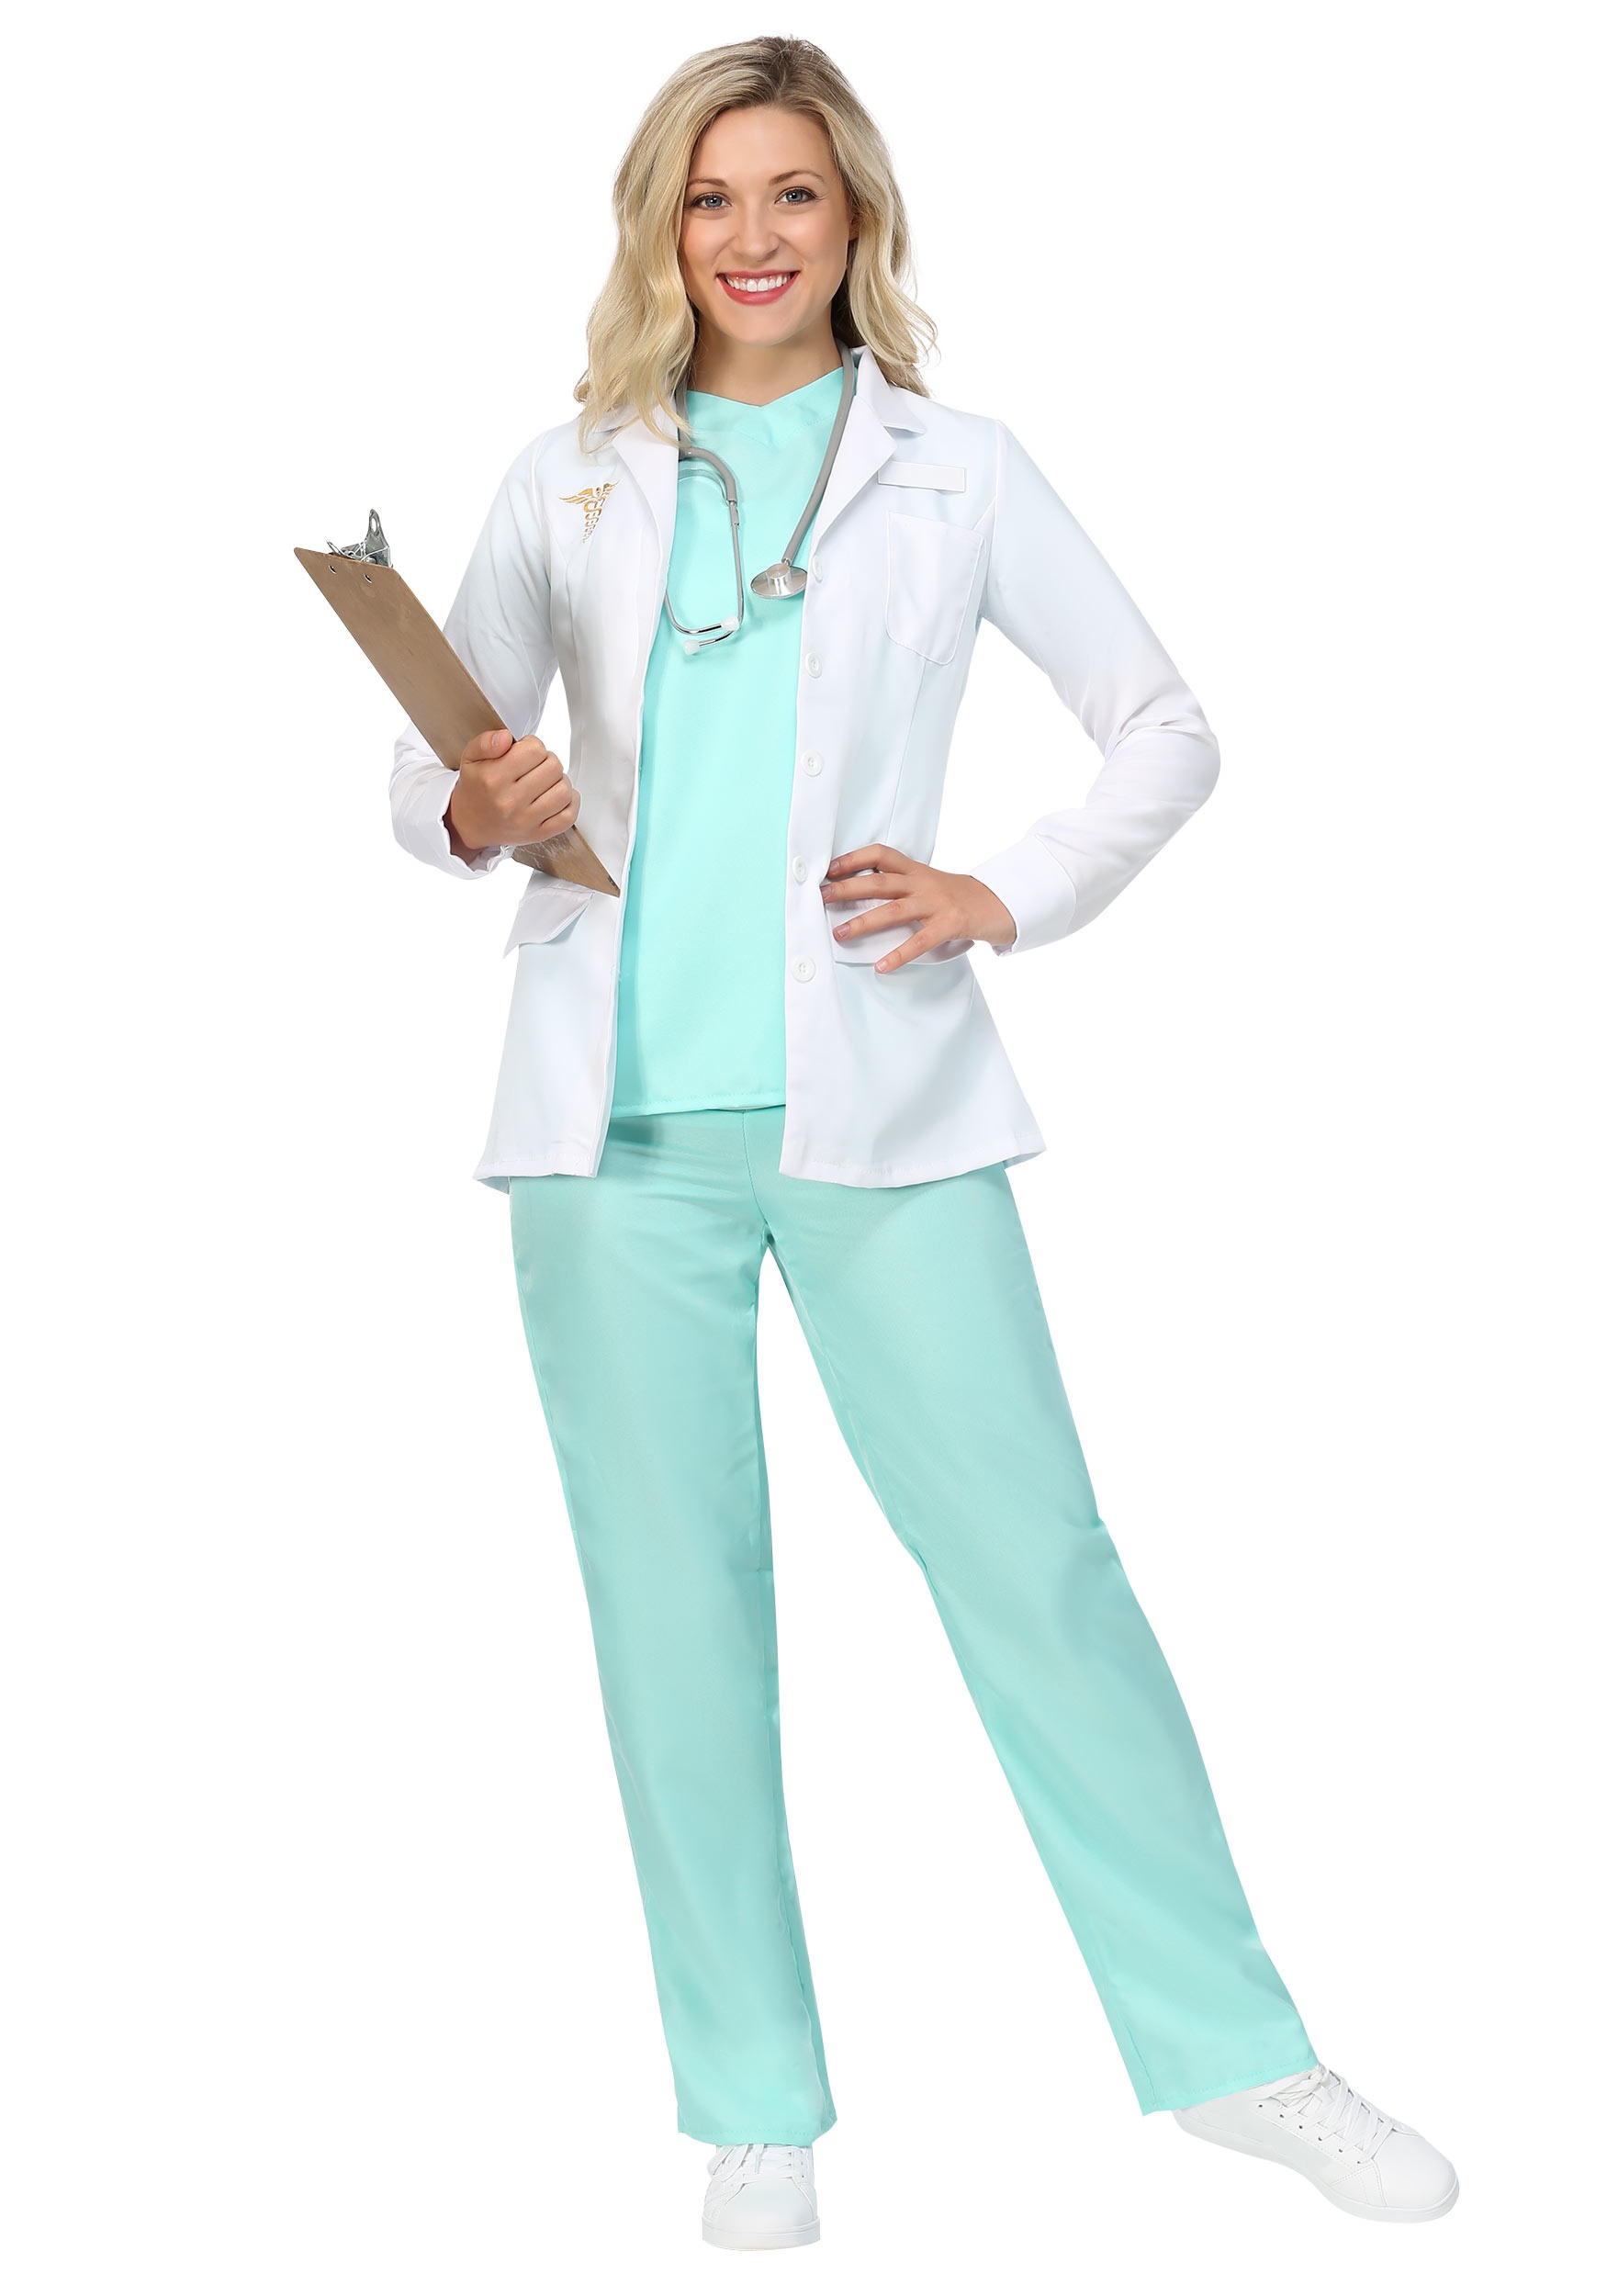 Women’s Doctor Costume